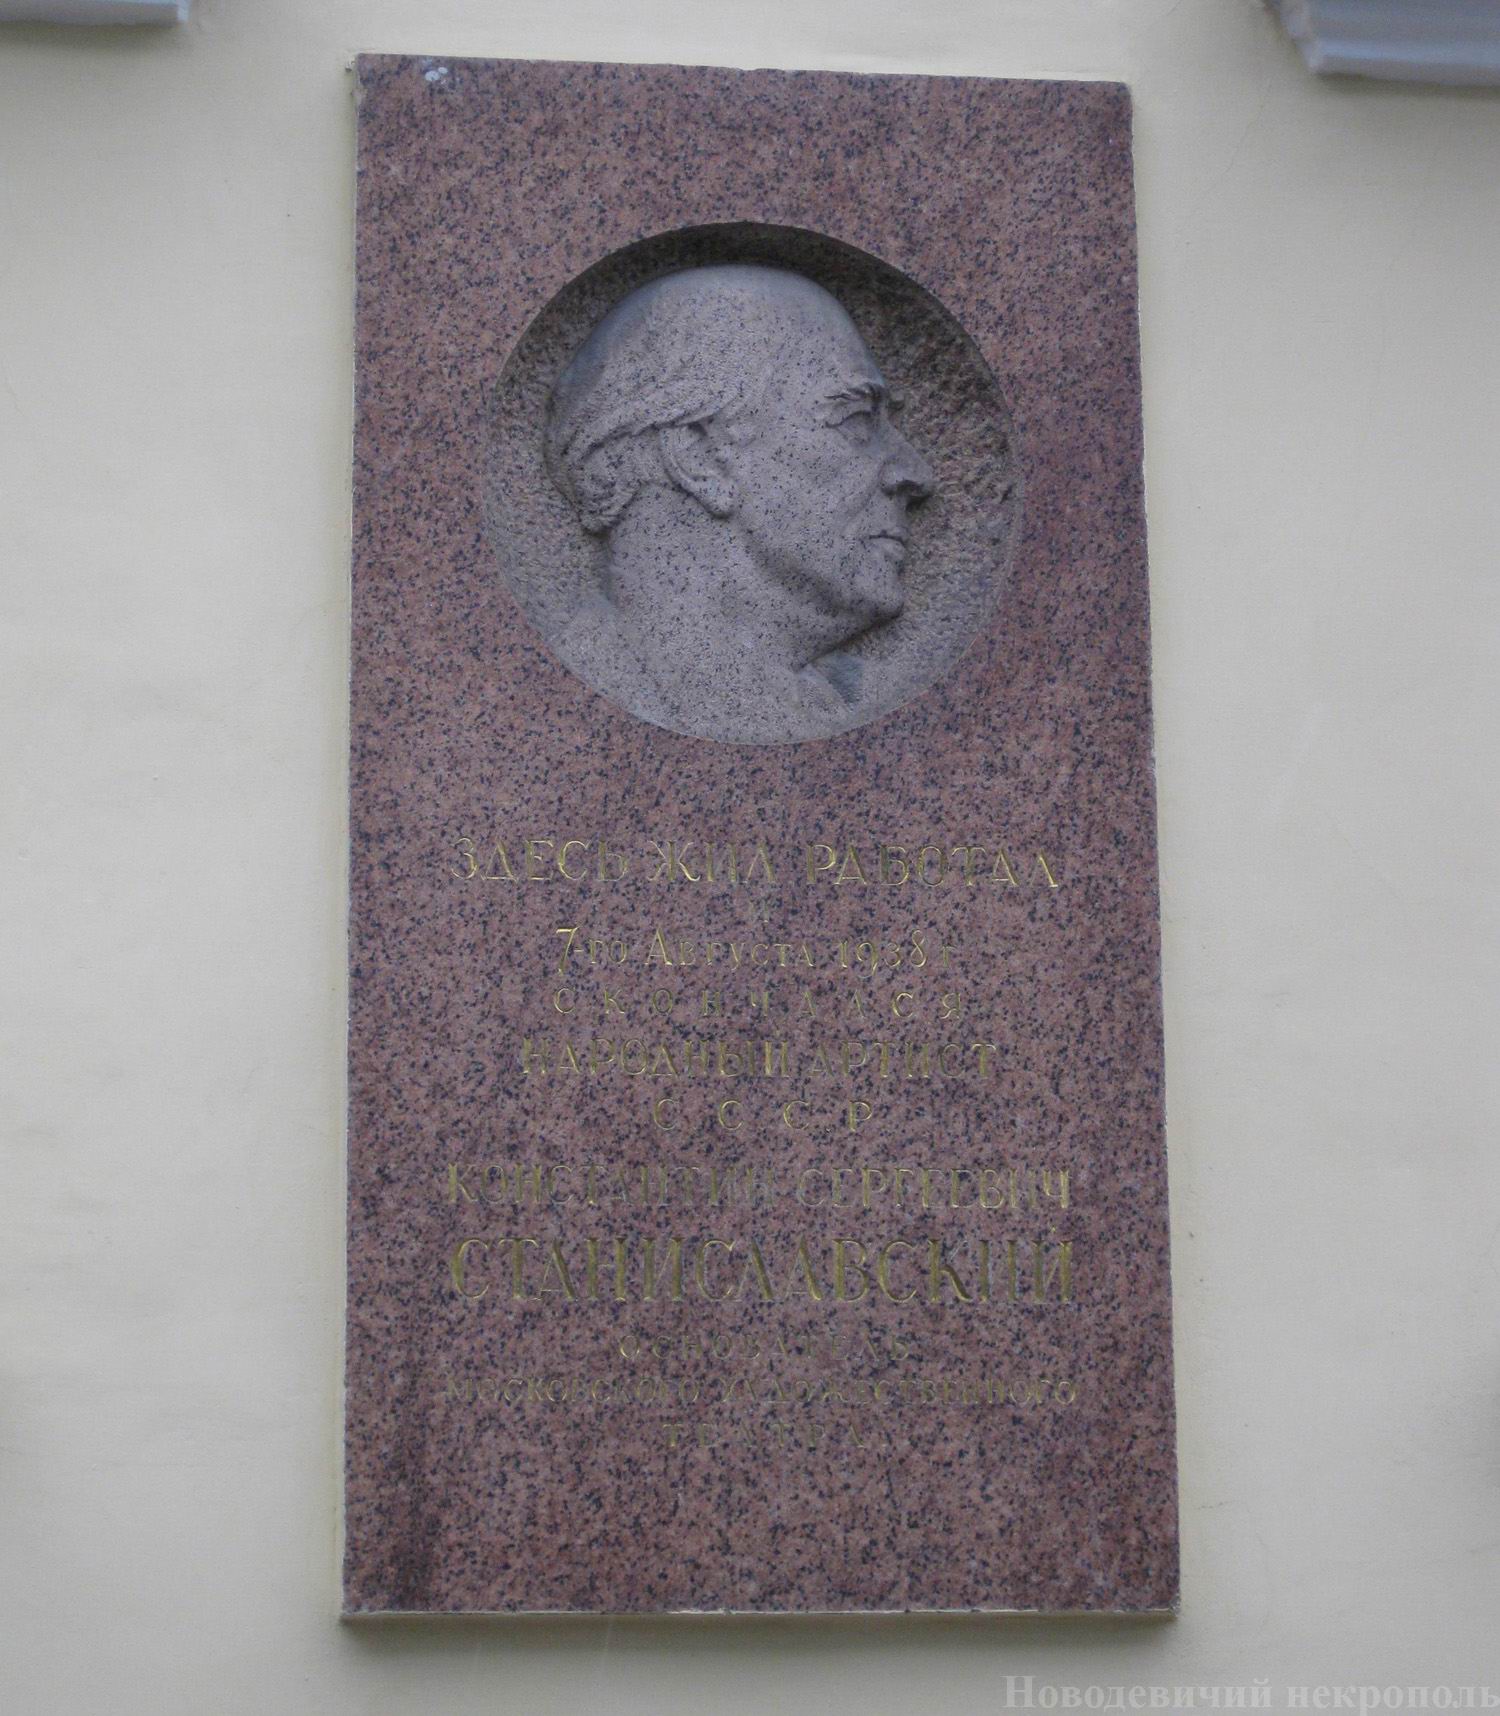 Мемориальная доска Станиславскому К.С. (1863-1938), ск. С.Д.Меркуров, в Леонтьевском переулке, дом 6, открыта 12.11.1944.